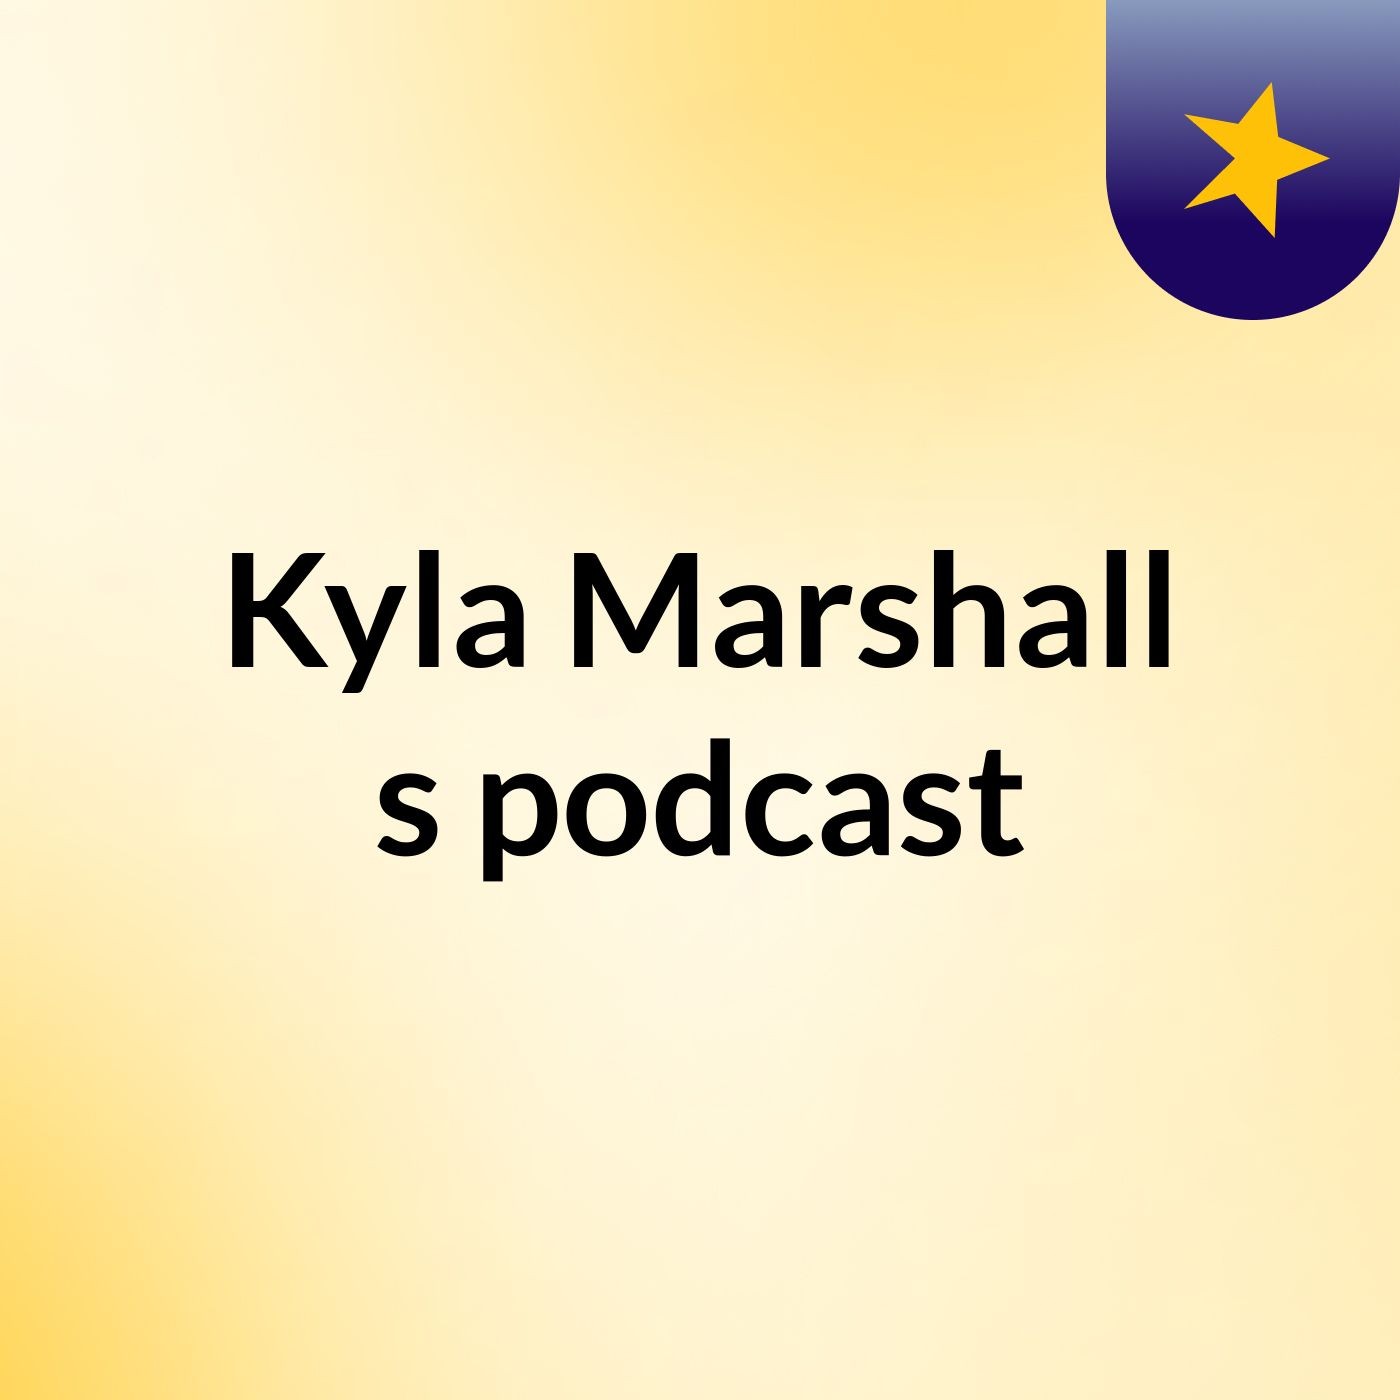 Kyla Marshall's podcast